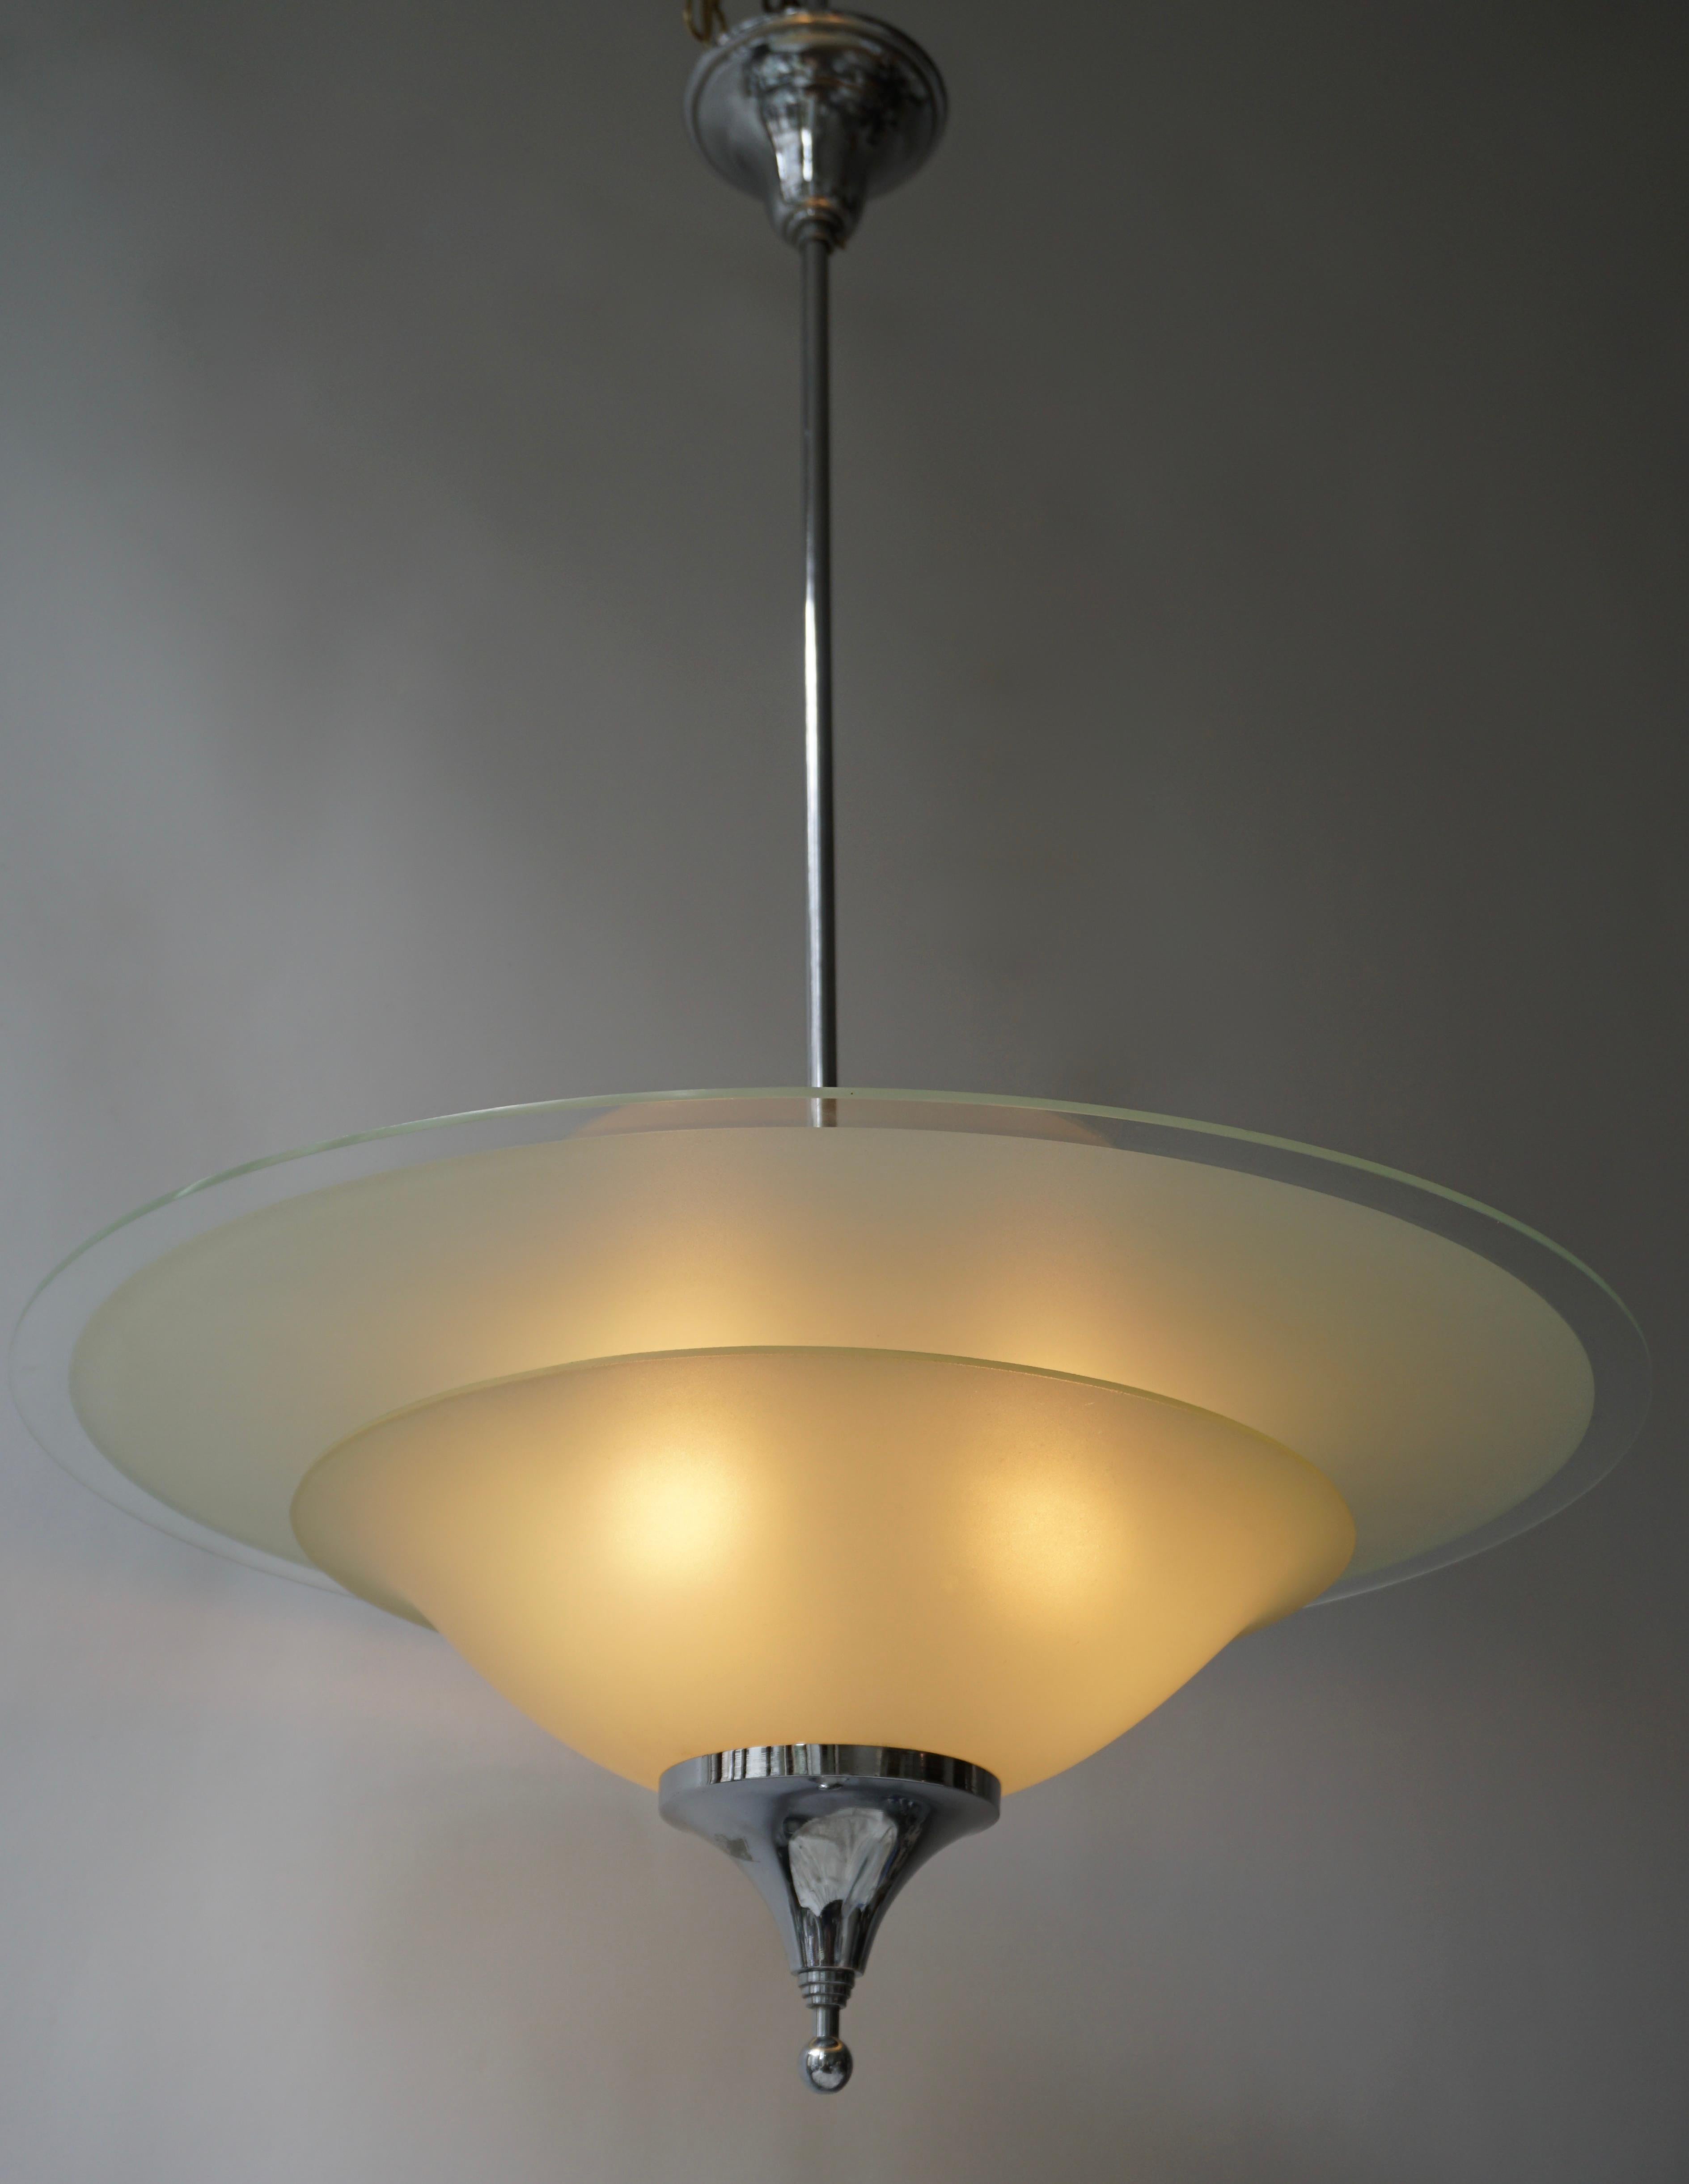 Merveilleuse lampe à suspension décorative en chrome et verre dépoli, conçue et fabriquée en Belgique dans les années 1930. 
Le lustre est entièrement fonctionnel et en très bon état vintage.

Le luminaire nécessite trois ampoules simples à vis